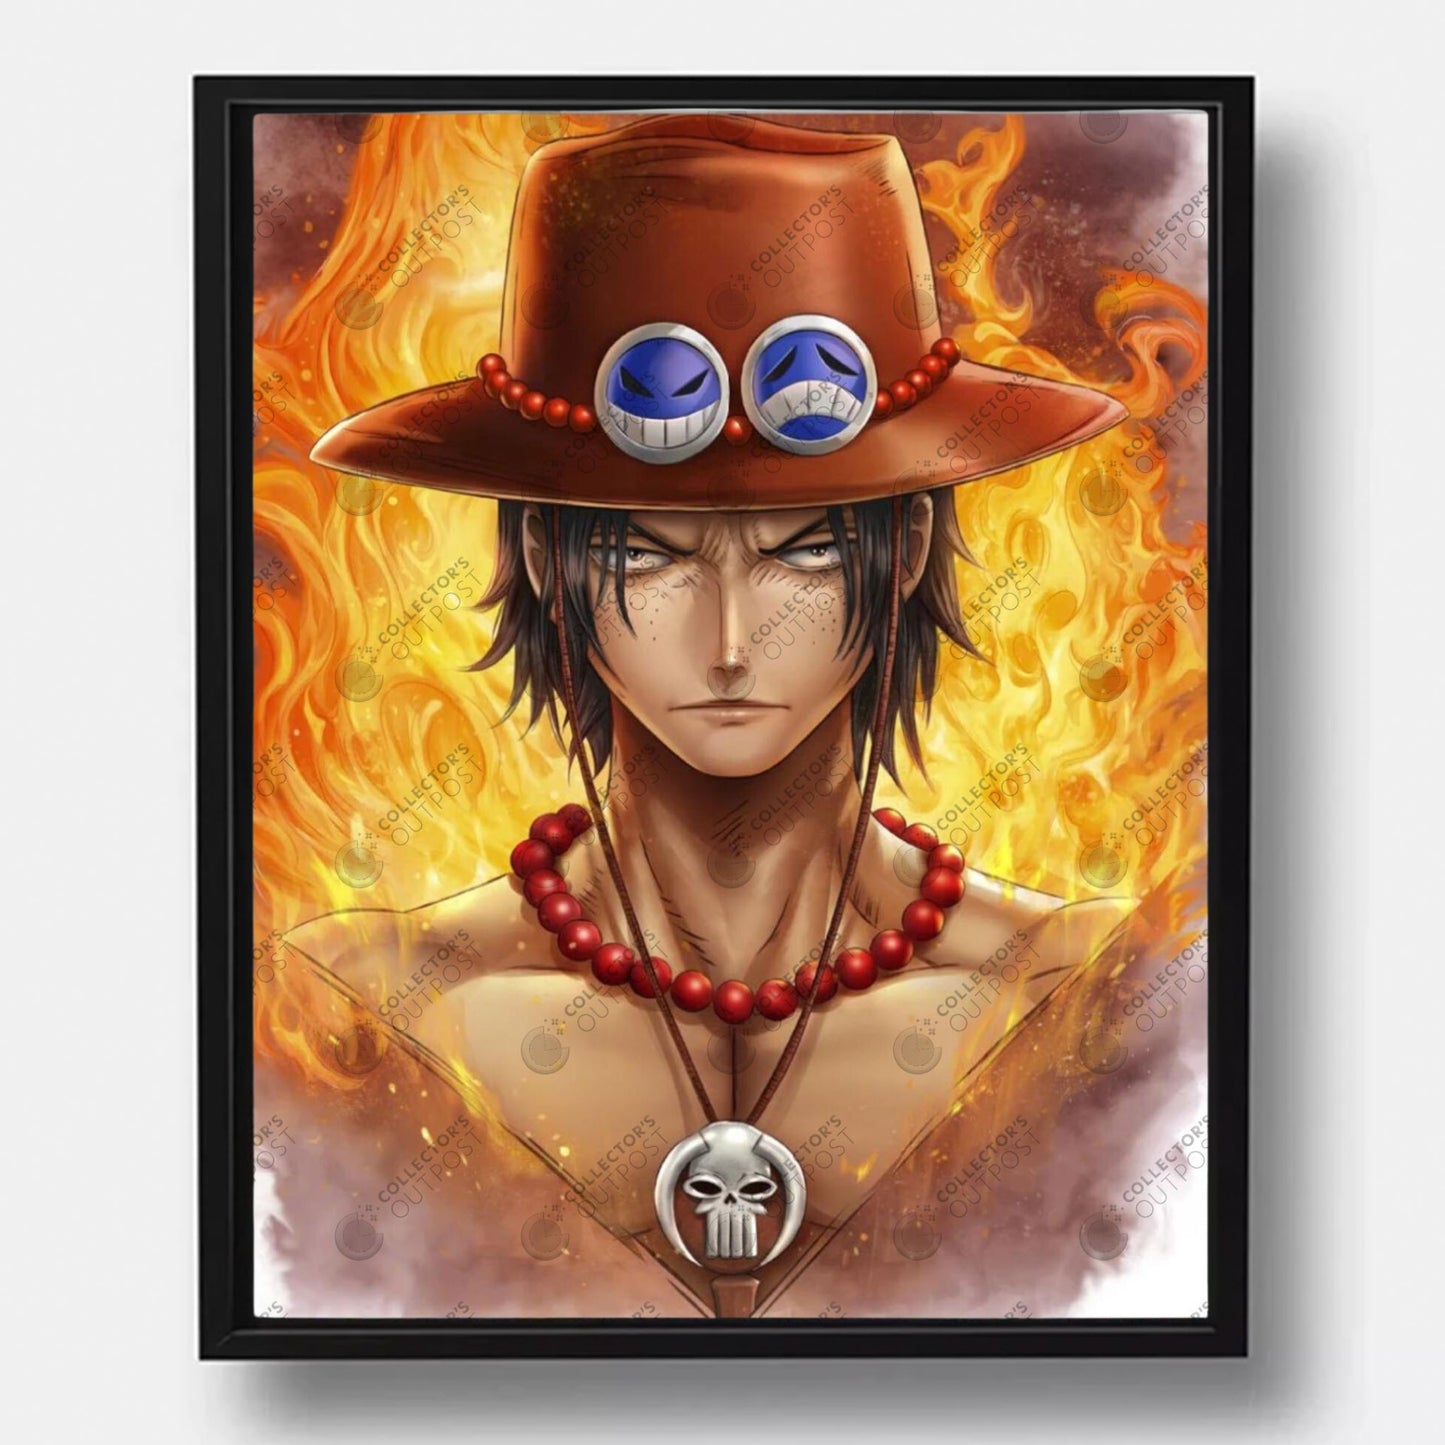 Portgas D. Ace "Fire Pirate" (One Piece) Legacy Portrait Art Print